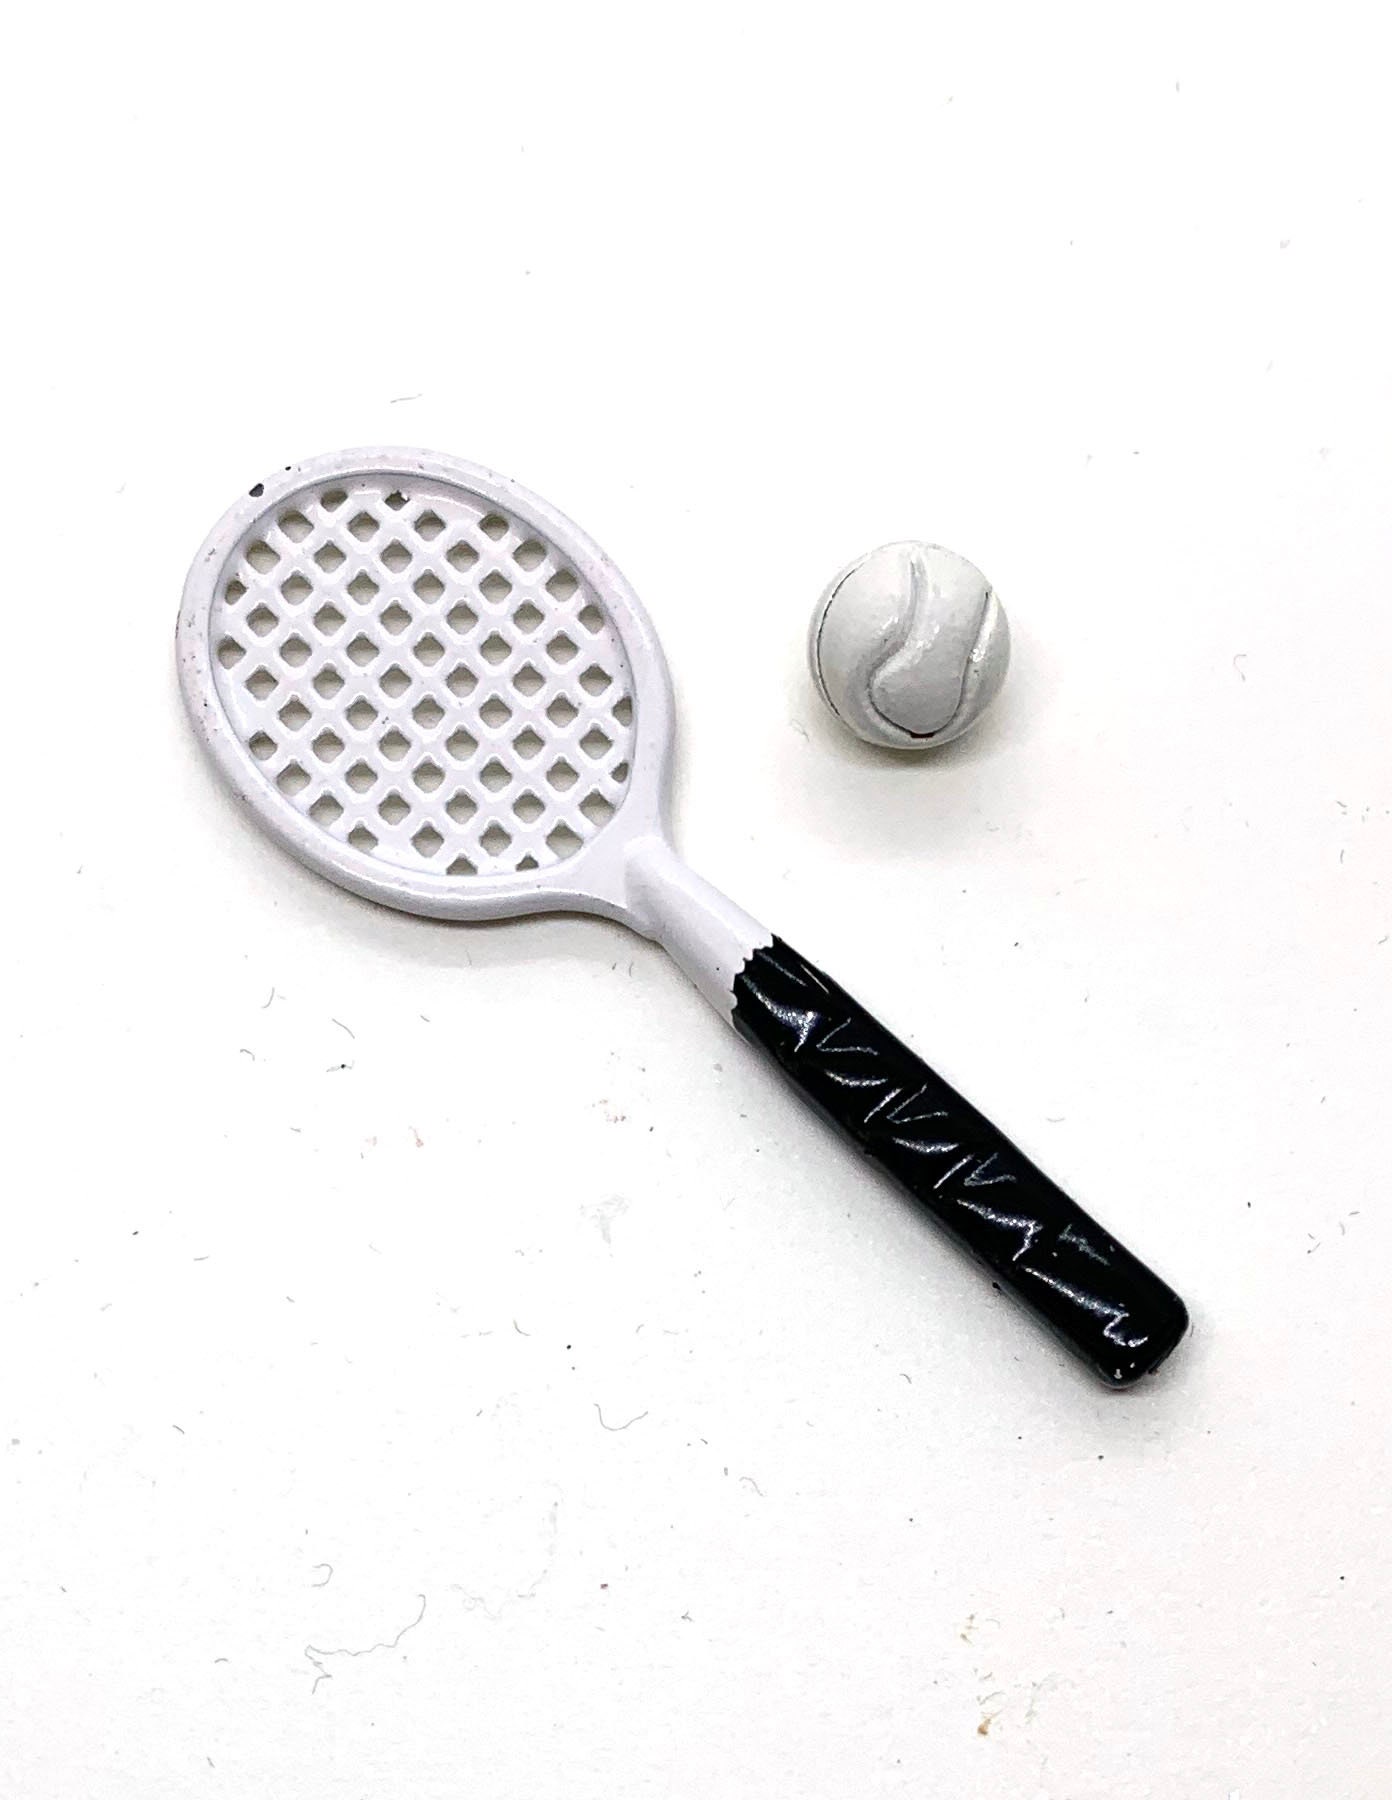 Miniature Tennis Racket Ball Sports Equipment Set of 2